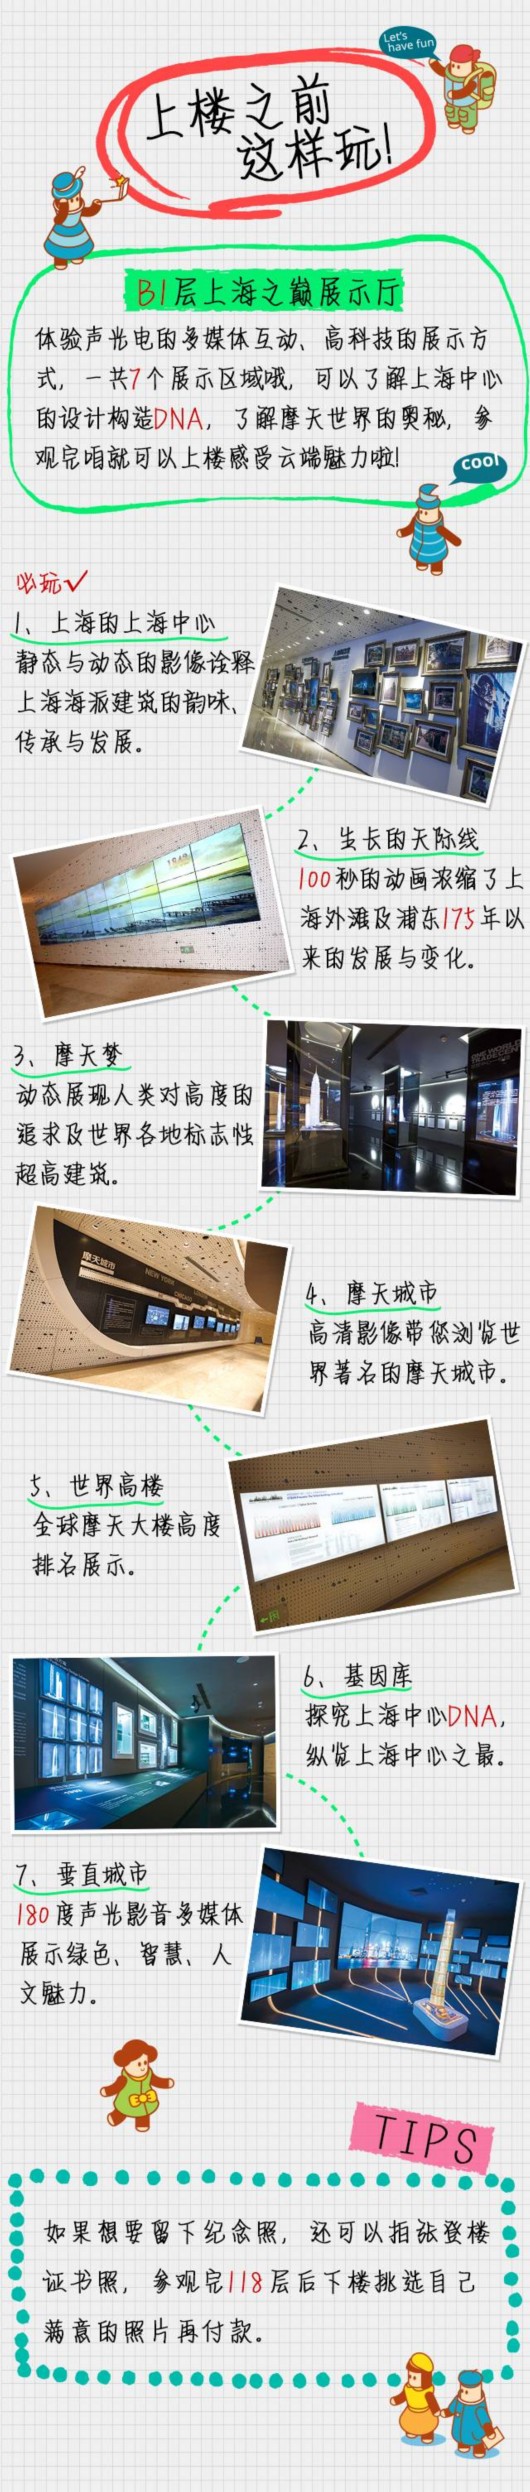 【旅游大文字】上海中心观光游览攻略首次发布